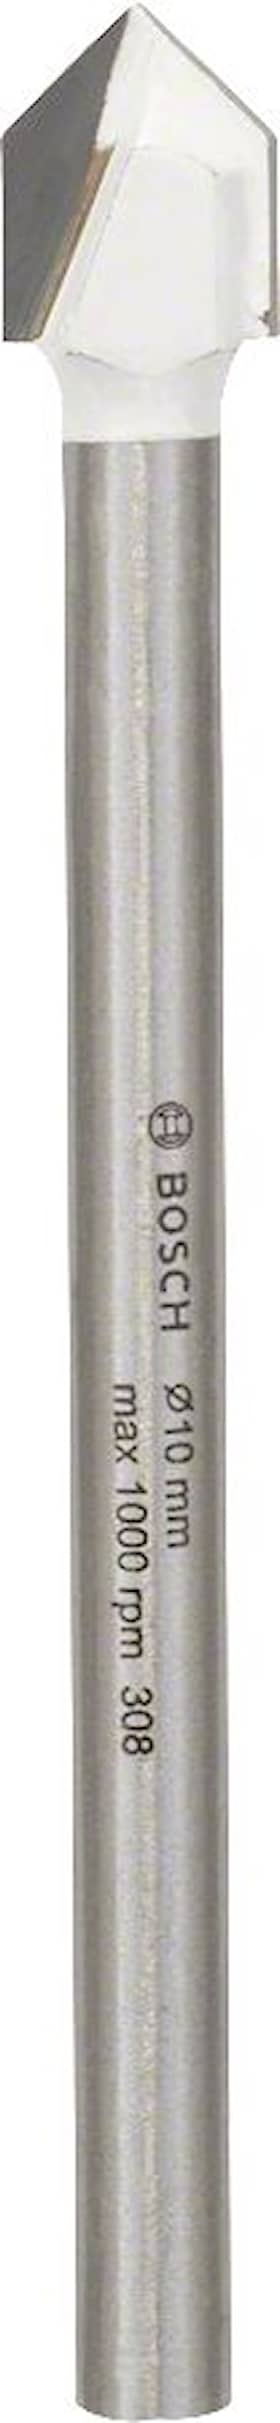 Bosch Flisebor CYL-9 Ceramic 10 x 90 mm